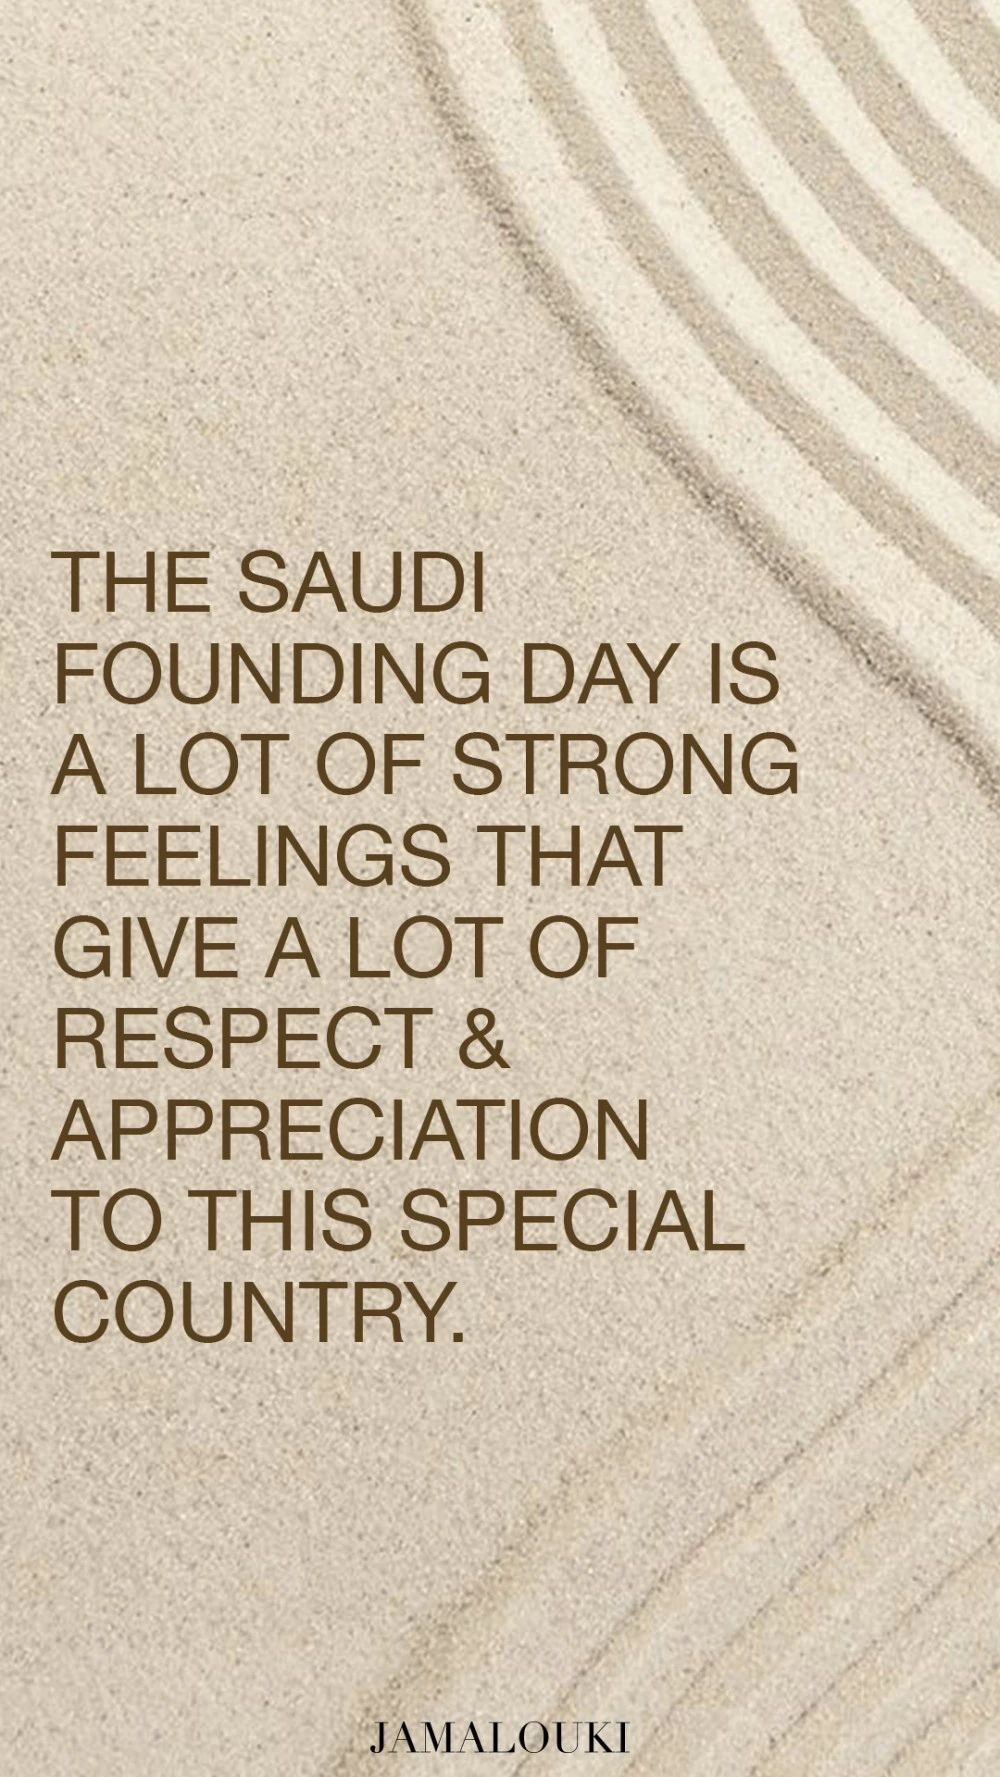 كلام عن يوم التأسيس السعودي